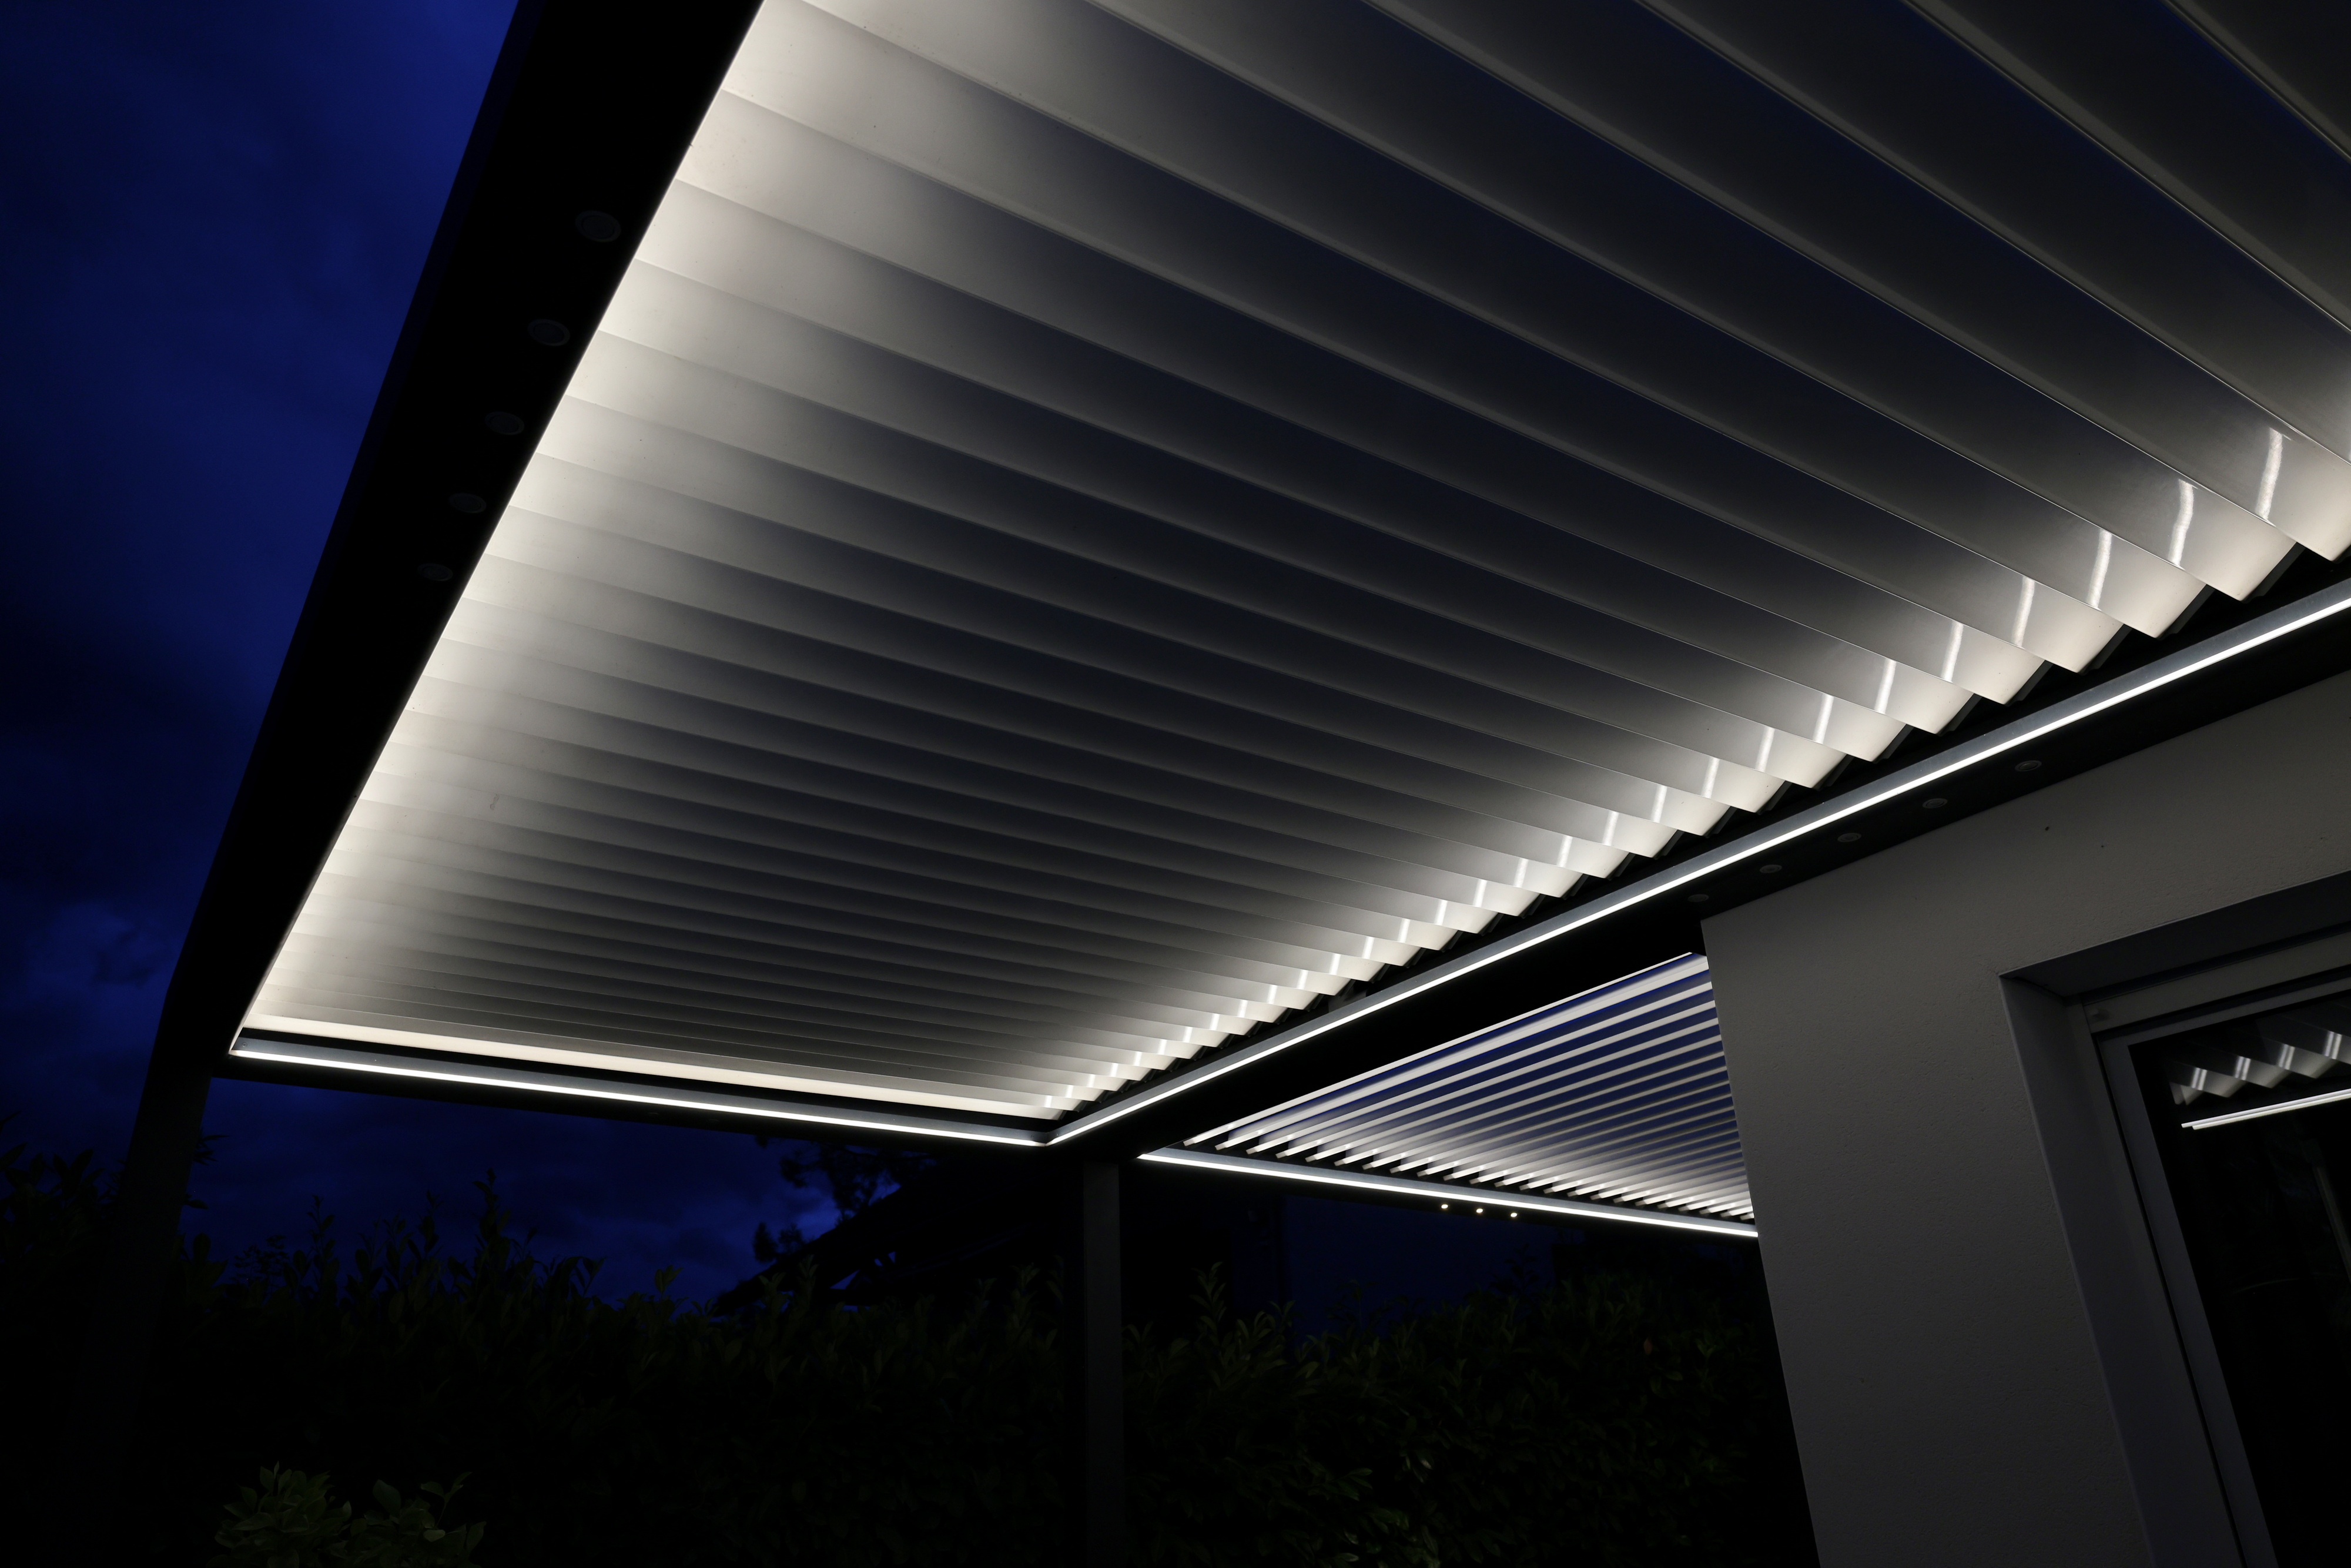 L' éclairage led design et économique pour votre terrasse ! - Blog